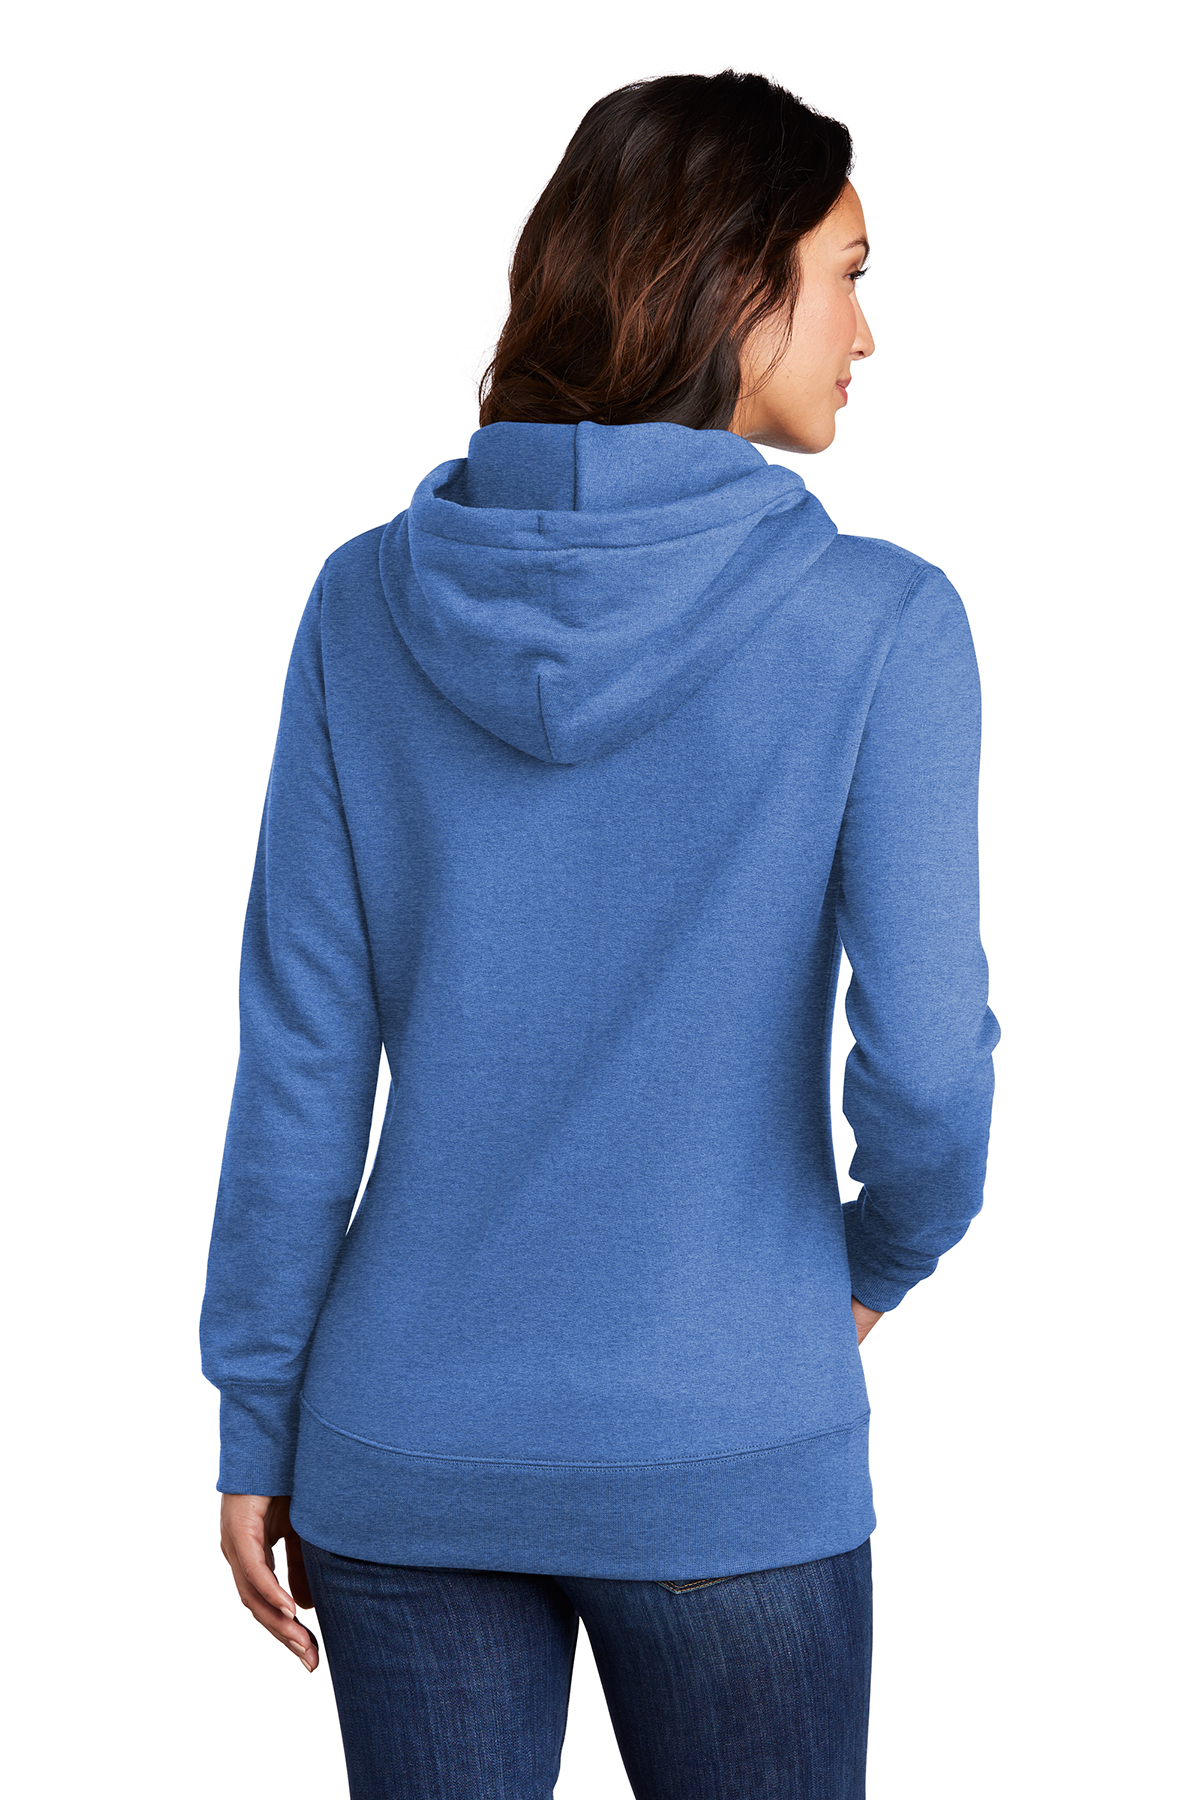 Download Port & Co. Ladies Core Fleece Pullover Hooded Sweatshirt ...